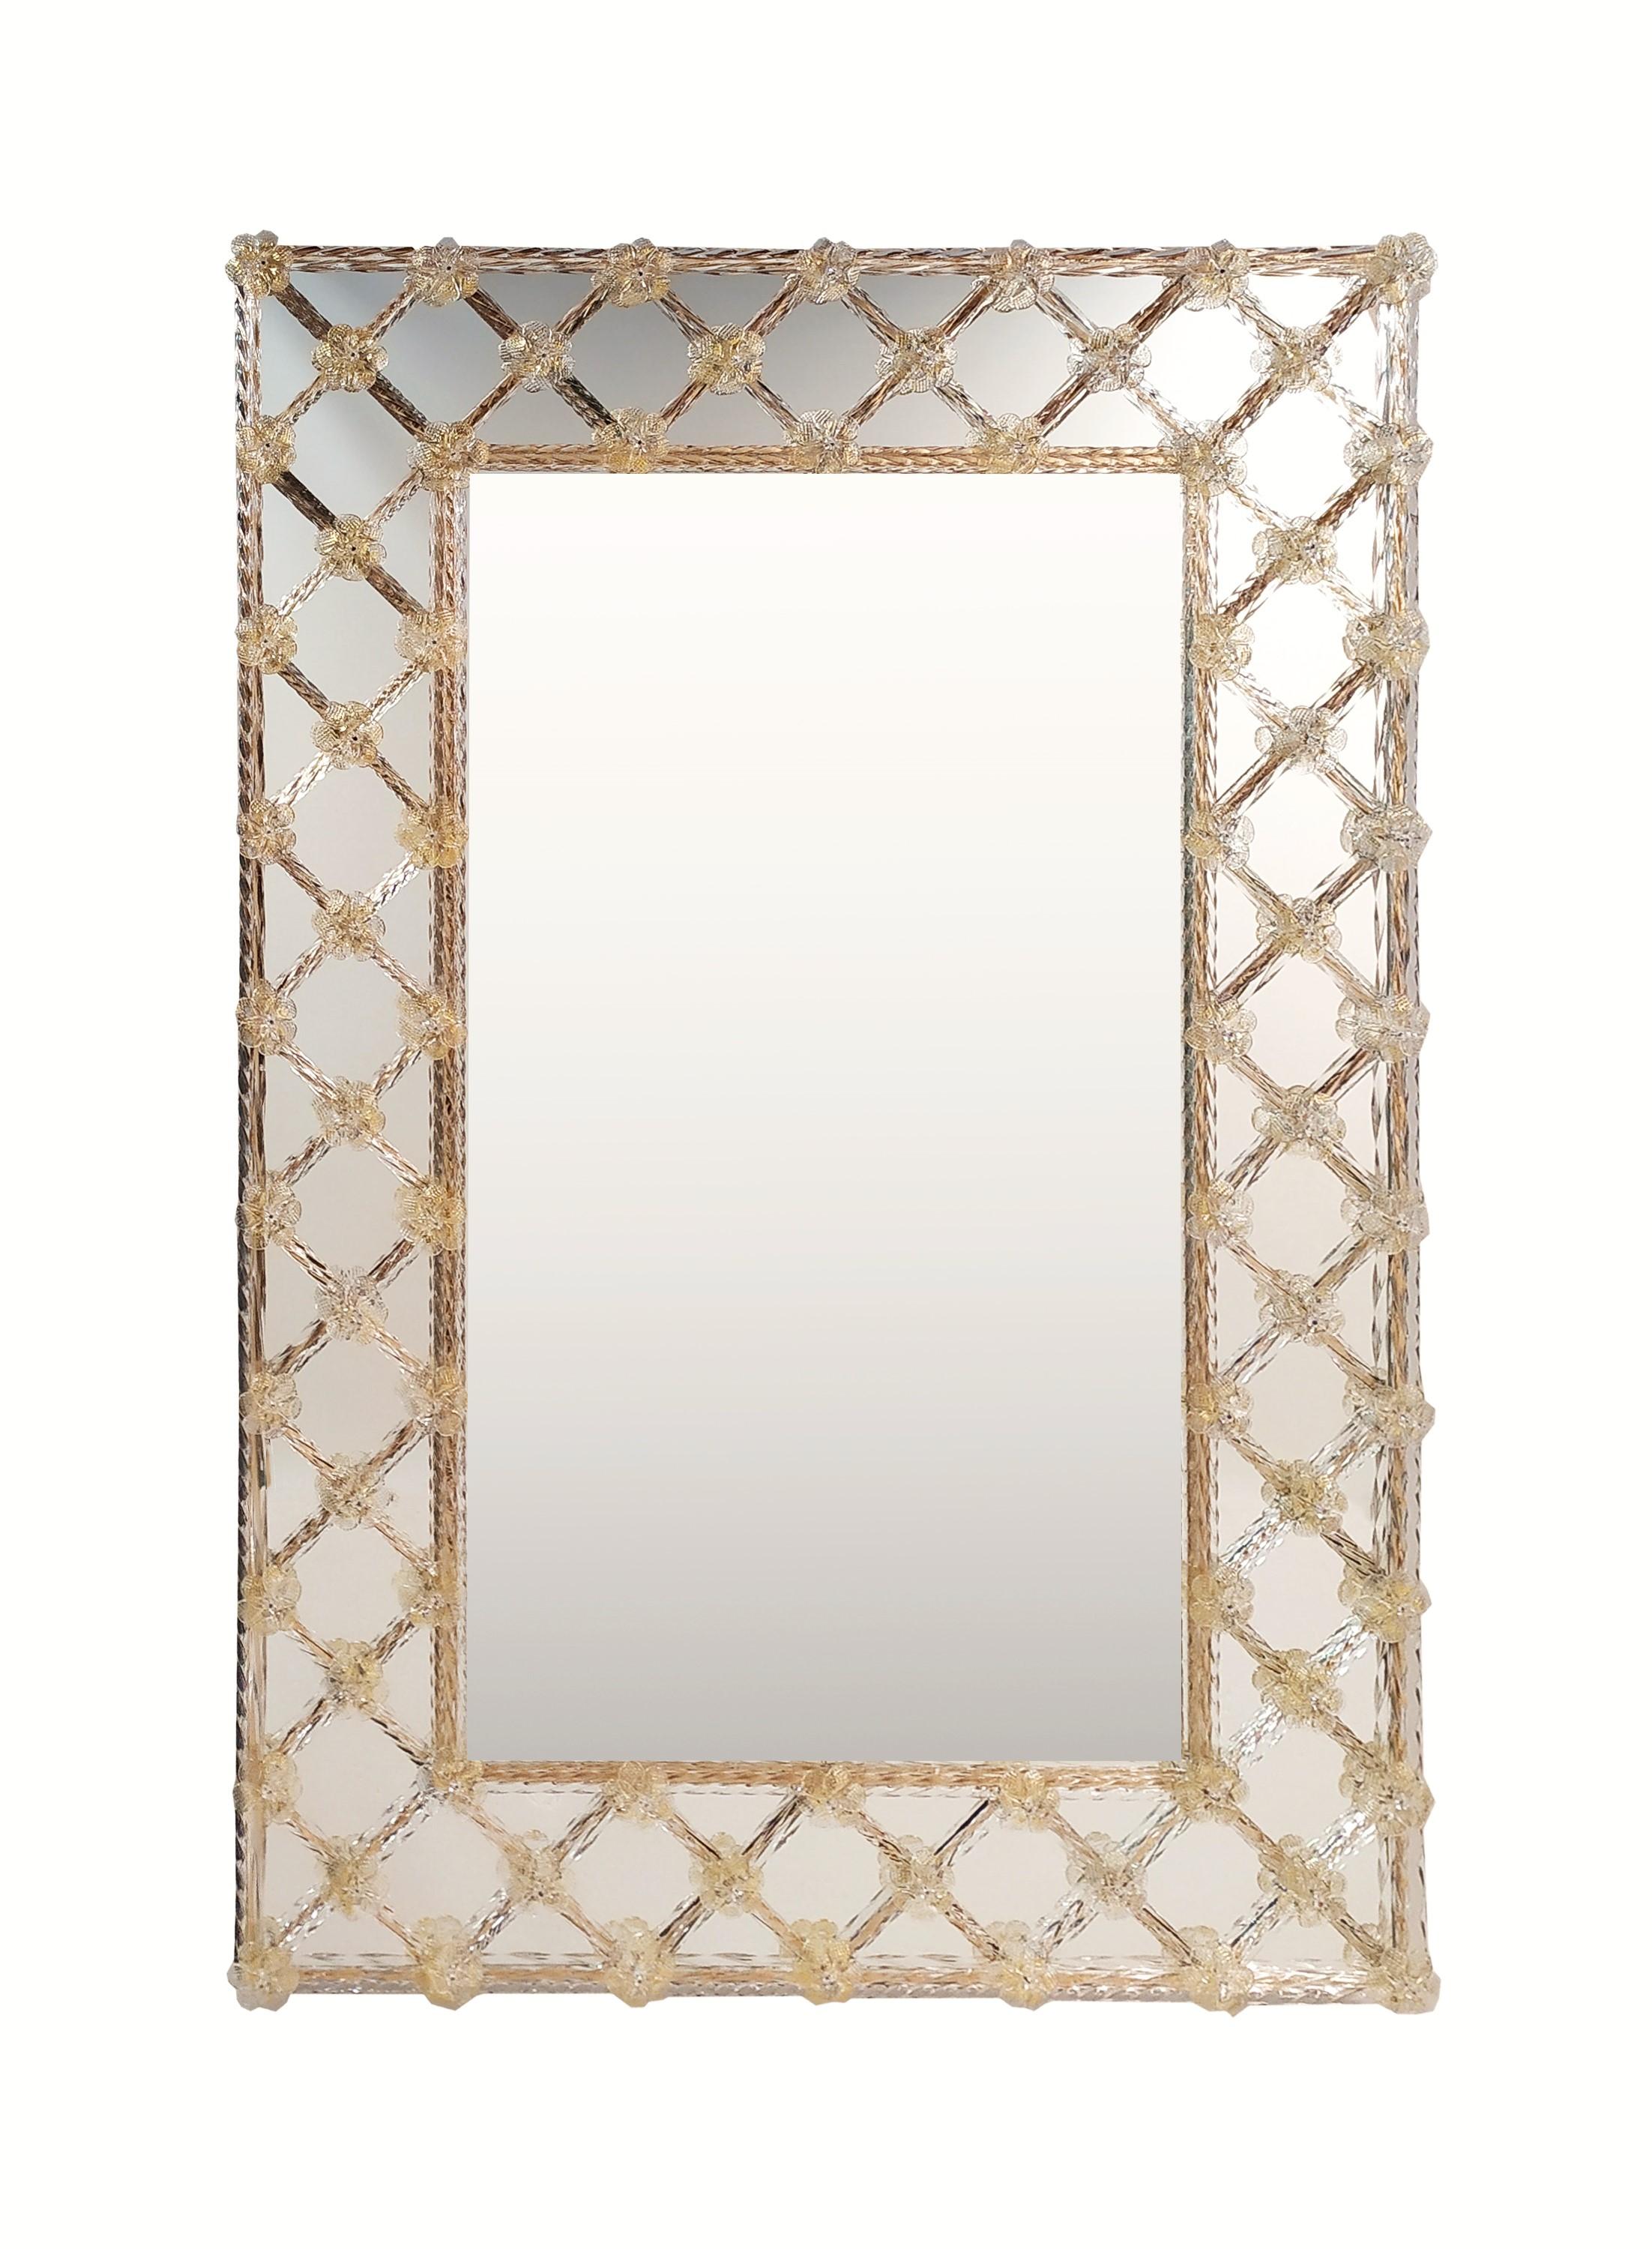 "CREME" Specchio Veneziano in Vetro di Murano, by Fratelli Tosi, Made in Italy